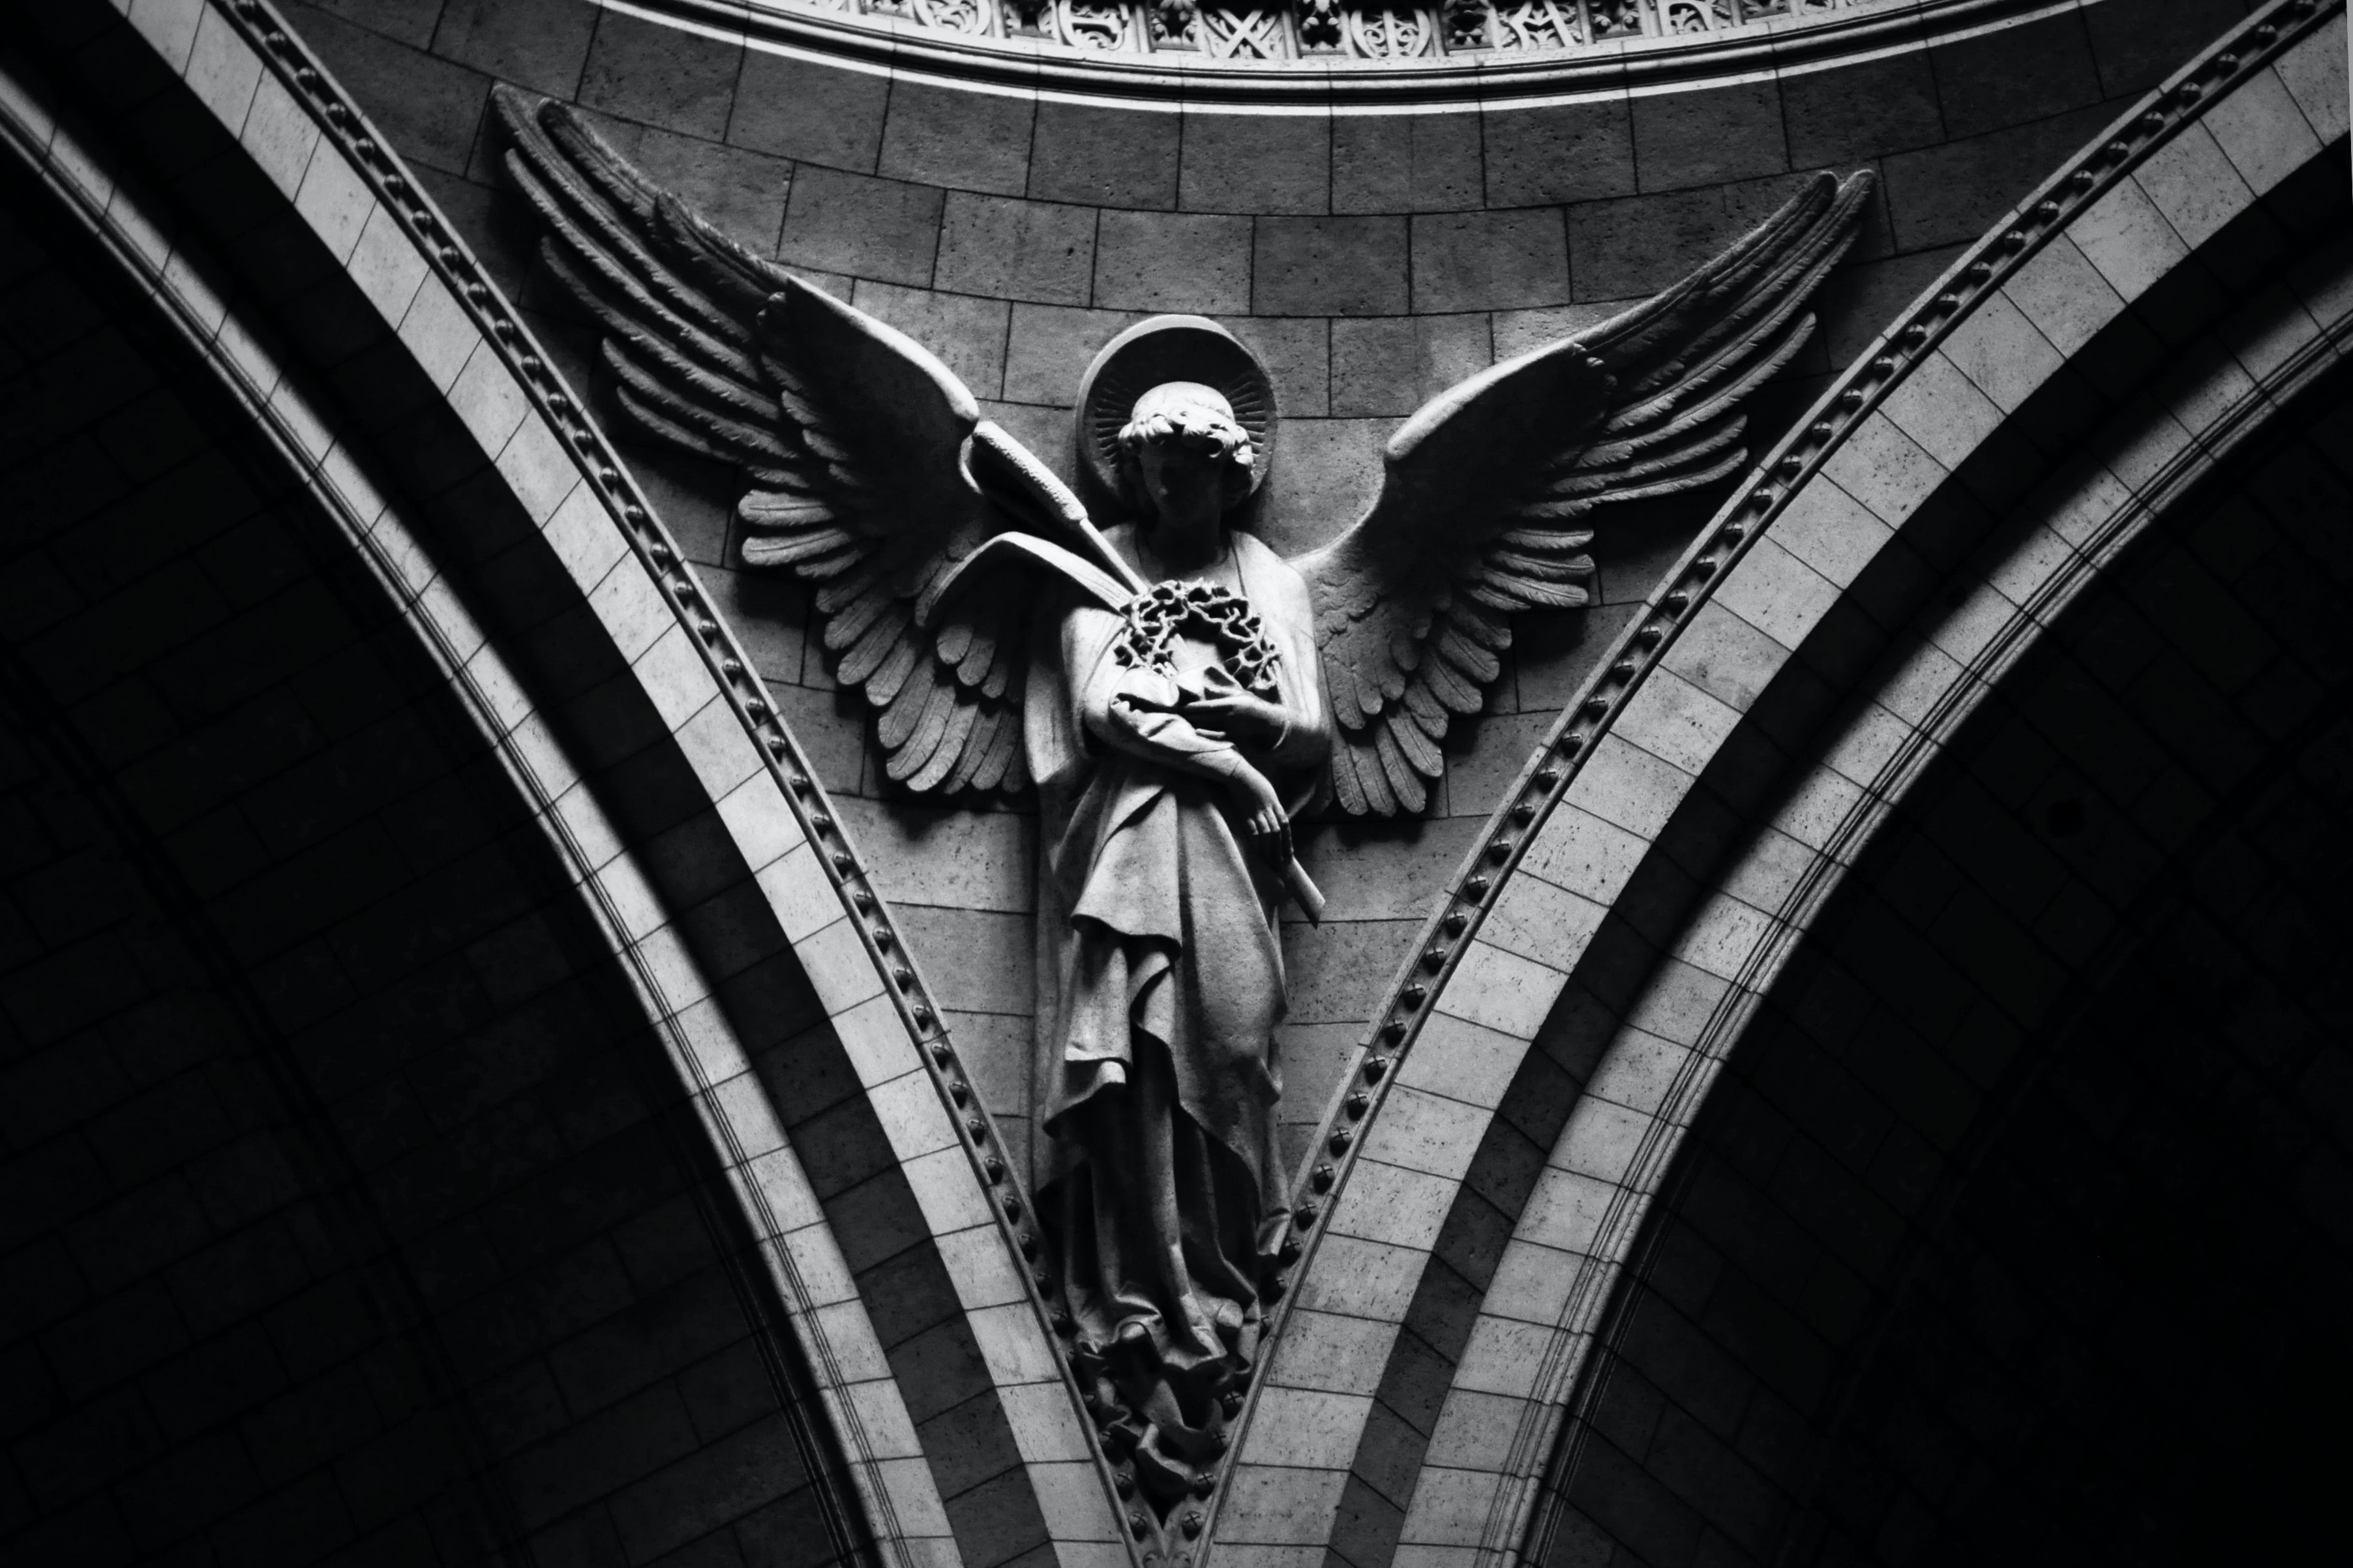 Miért kapnak frászt sokan az angyaloktól? – Most kiderül! (videó)